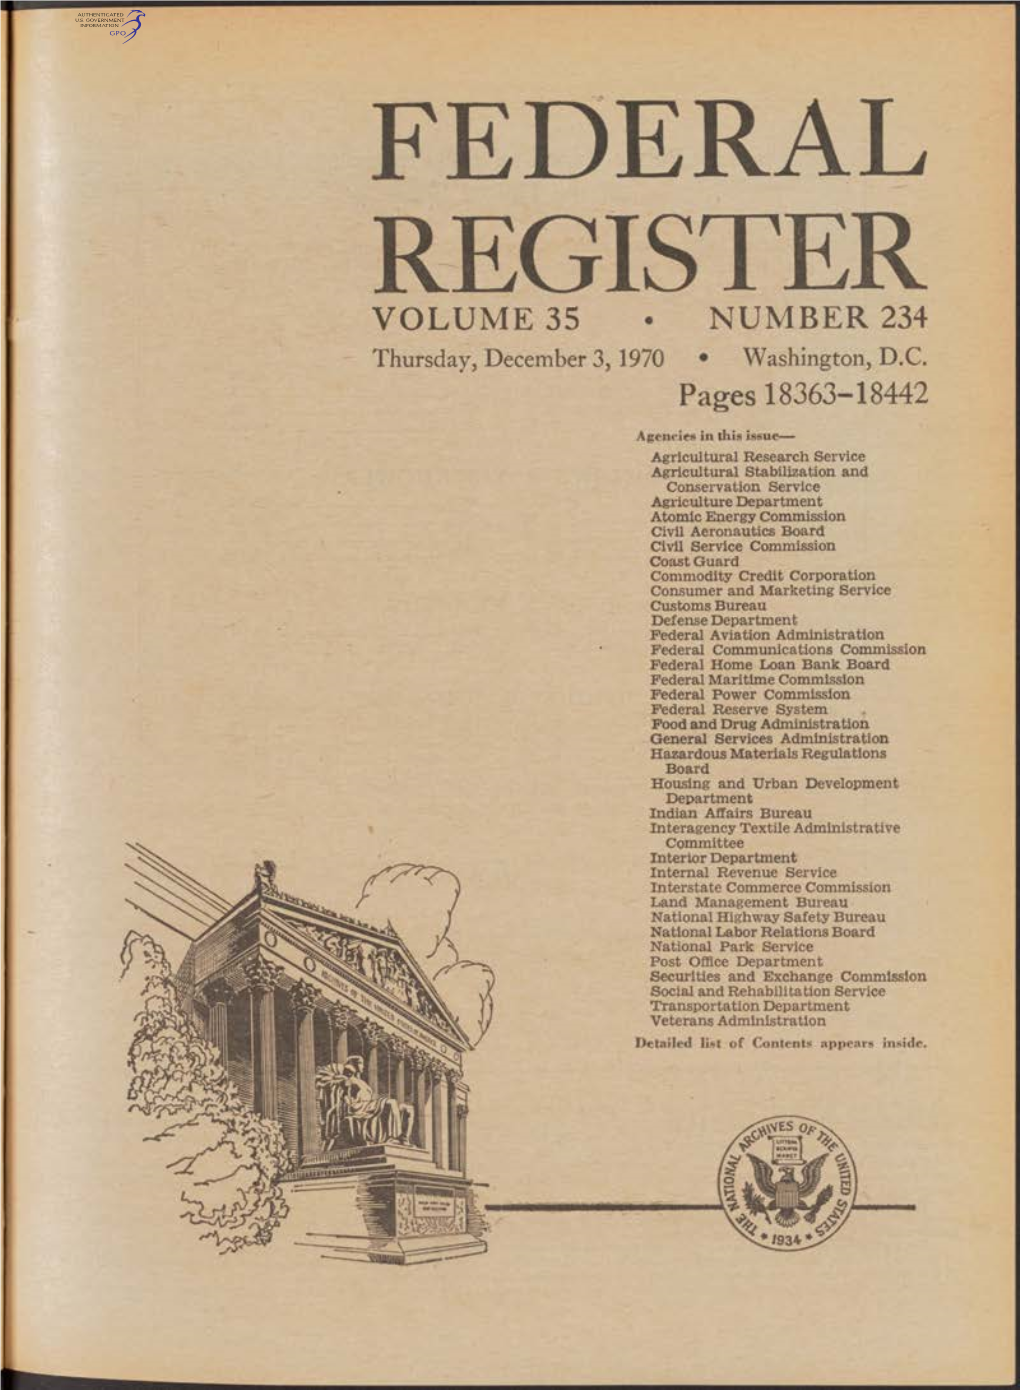 FEDERAL REGISTER VOLUME 35 • NUMBER 234 Thursday, December 3,1970 • Washington, D.C